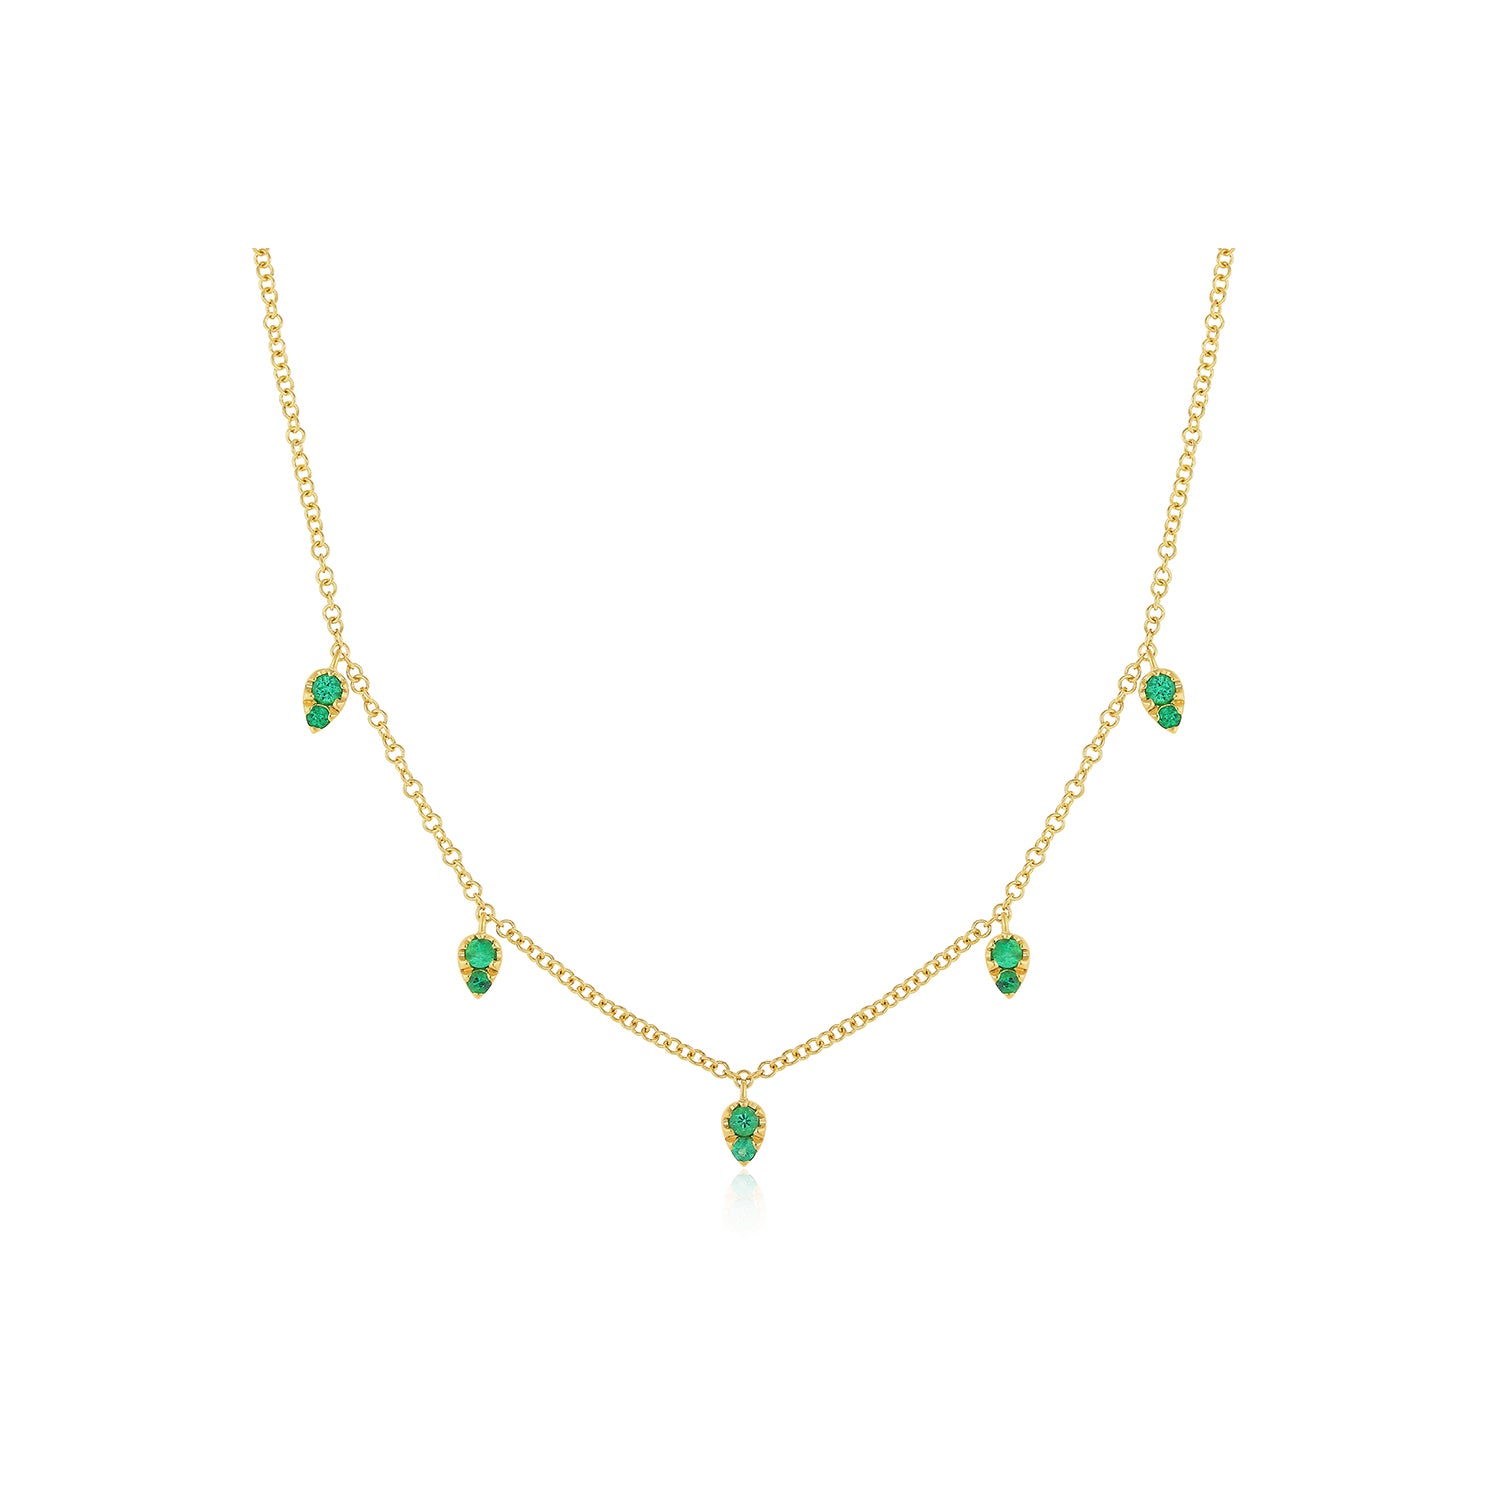 Emerald 5 Teardrop Choker Necklace in 14k yellow gold